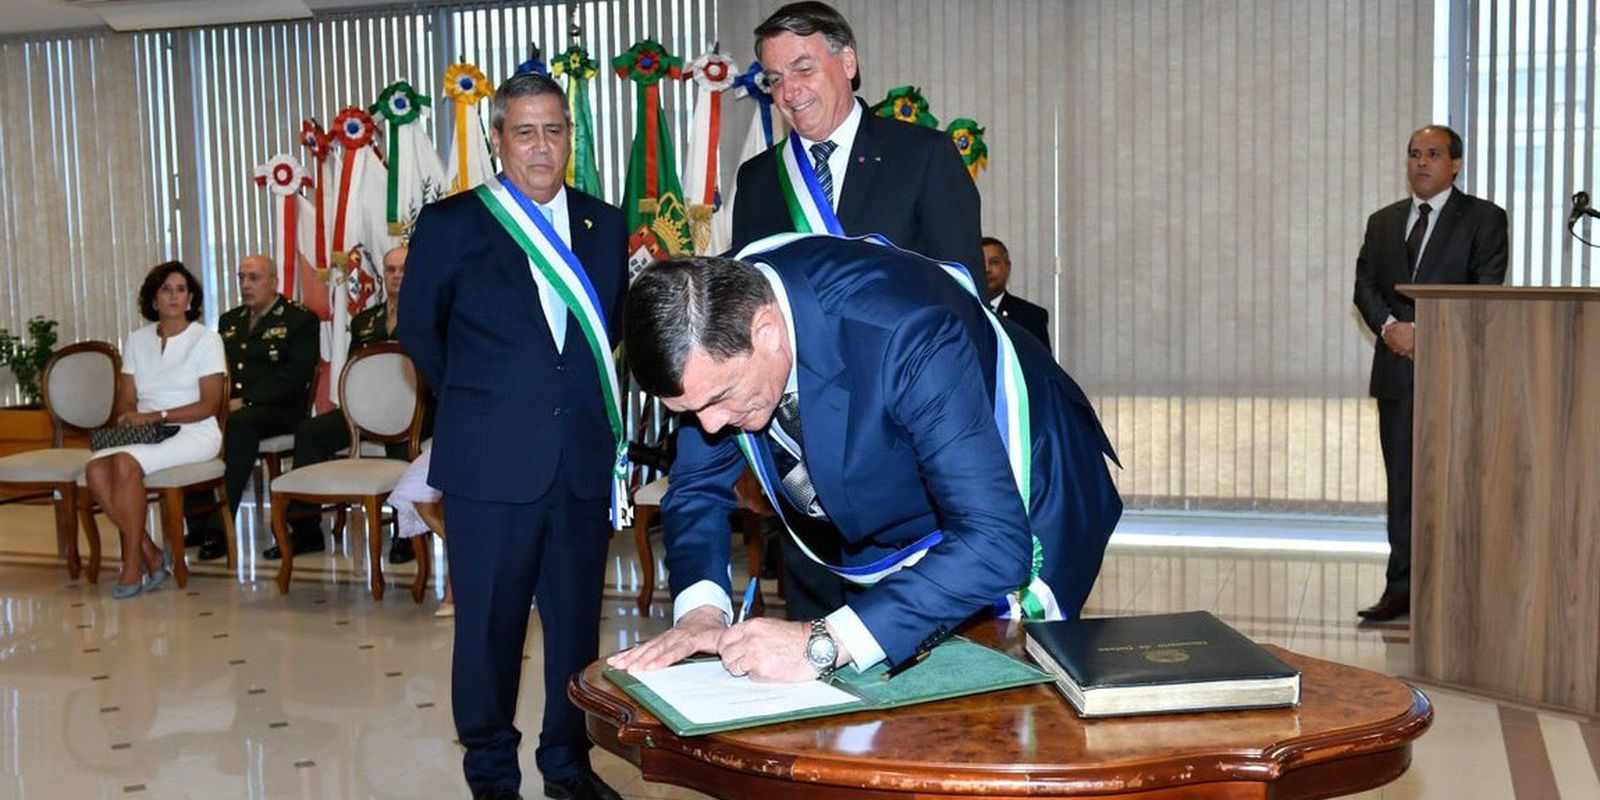 O Presidente da República, @jairbolsonaro , e o General de Exército Paulo Sérgio Nogueira de Oliveira assinaram o termo de posse do cargo de Ministro de Estado da Defesa.